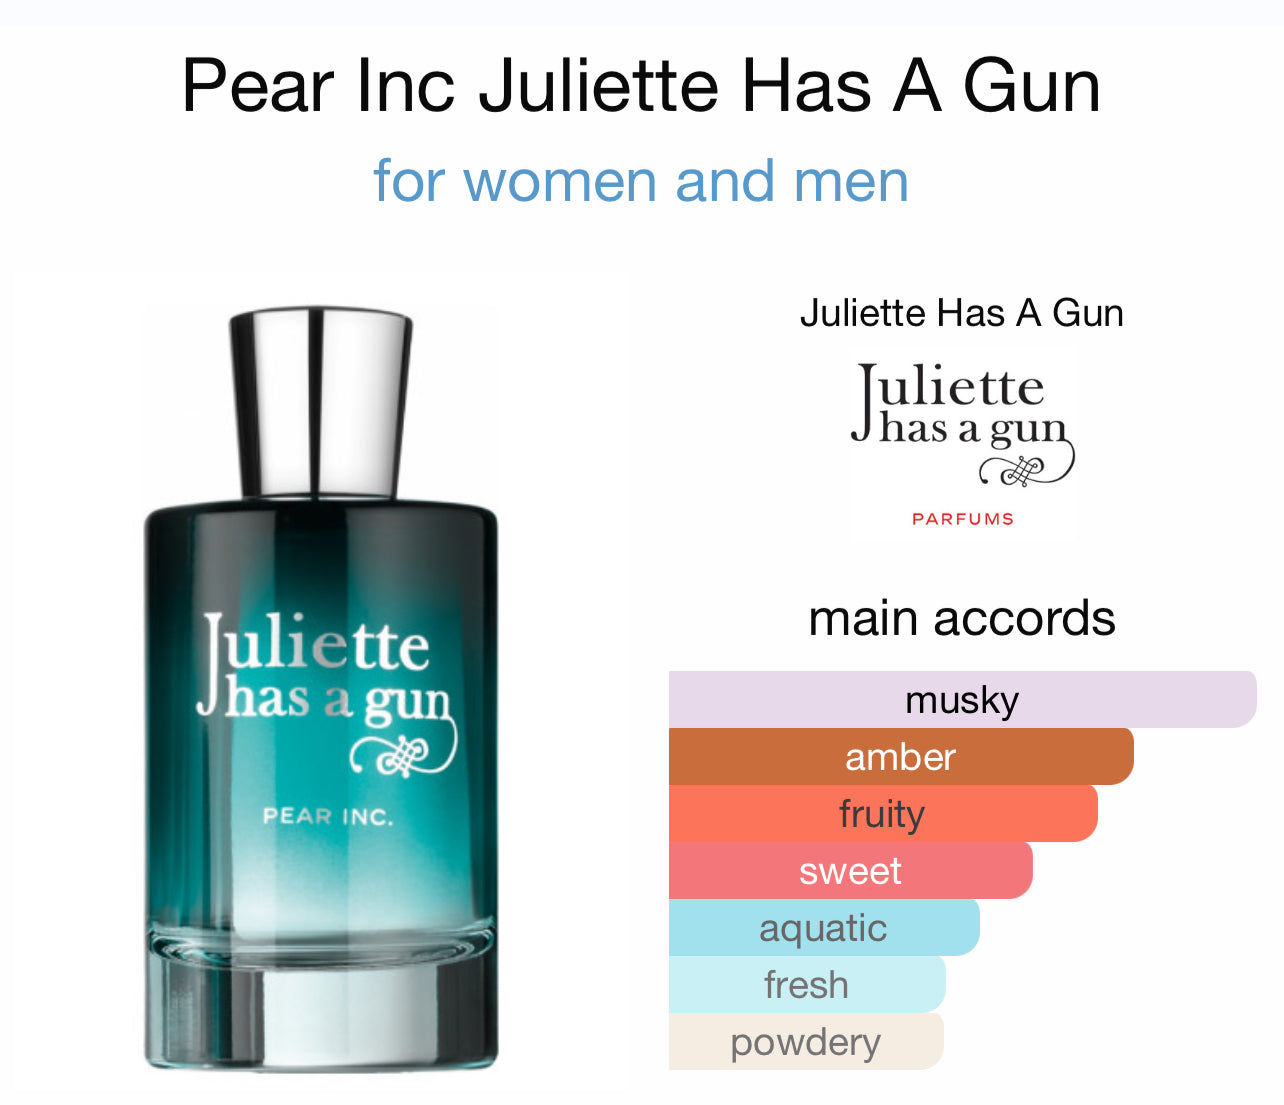 Juliette Has A Gun Pear Inc EDP Sample/Decant